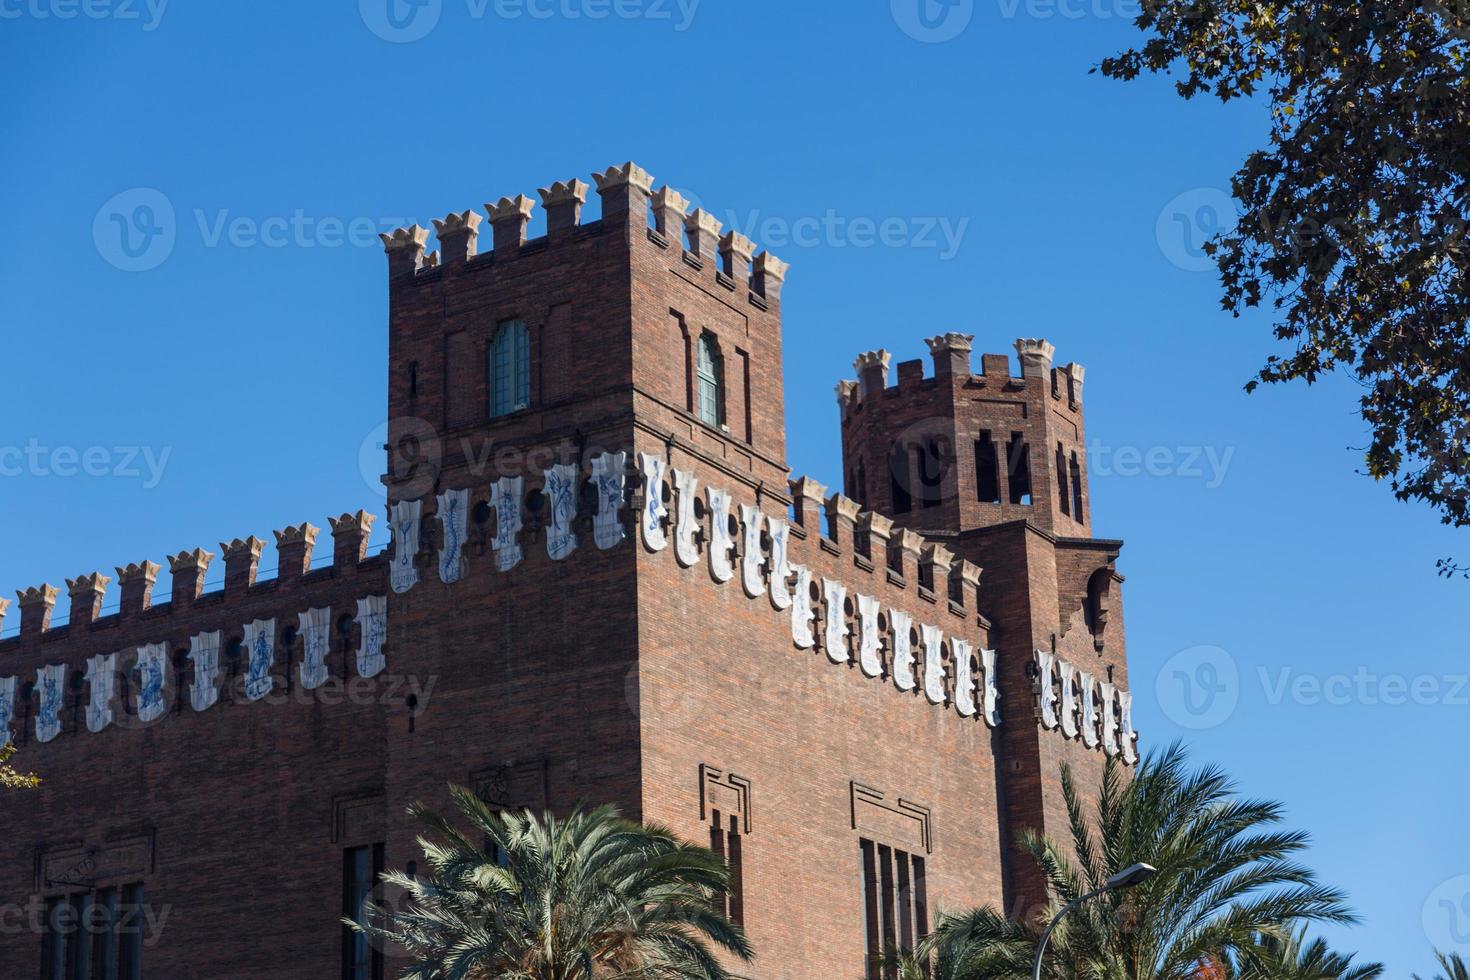 barcelone ciudadela château des trois dragons par domenech i montaner architect photo